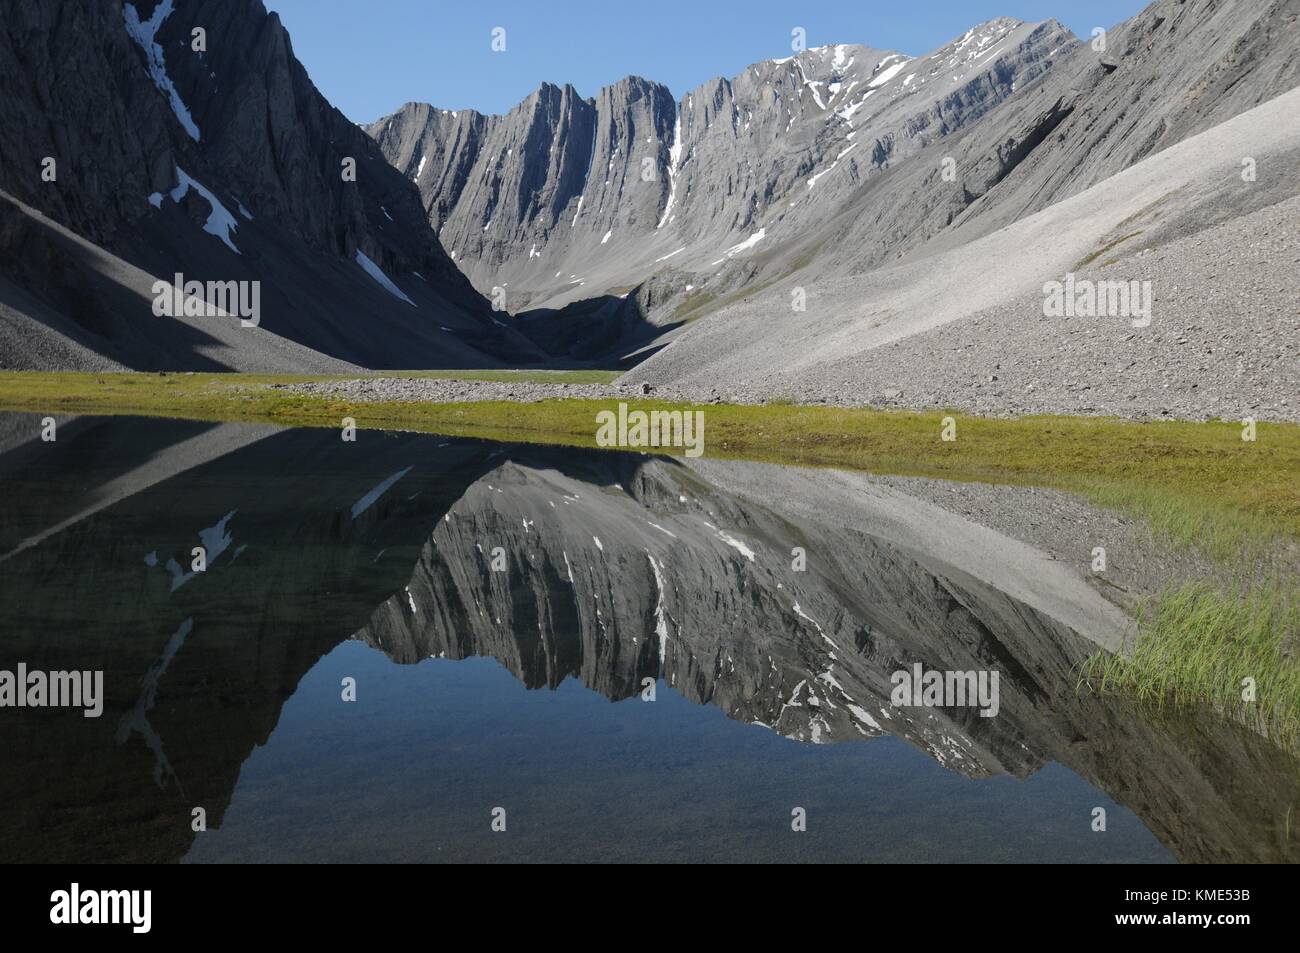 Un pequeño lago de montaña que se asienta en el valle en el itkillik oolah preservar a las puertas del parque nacional del ártico y preservar el 30 de julio de 2014 cerca de Coldfoot, Alaska. (Foto por cadence c. Cook a través planetpix) Foto de stock